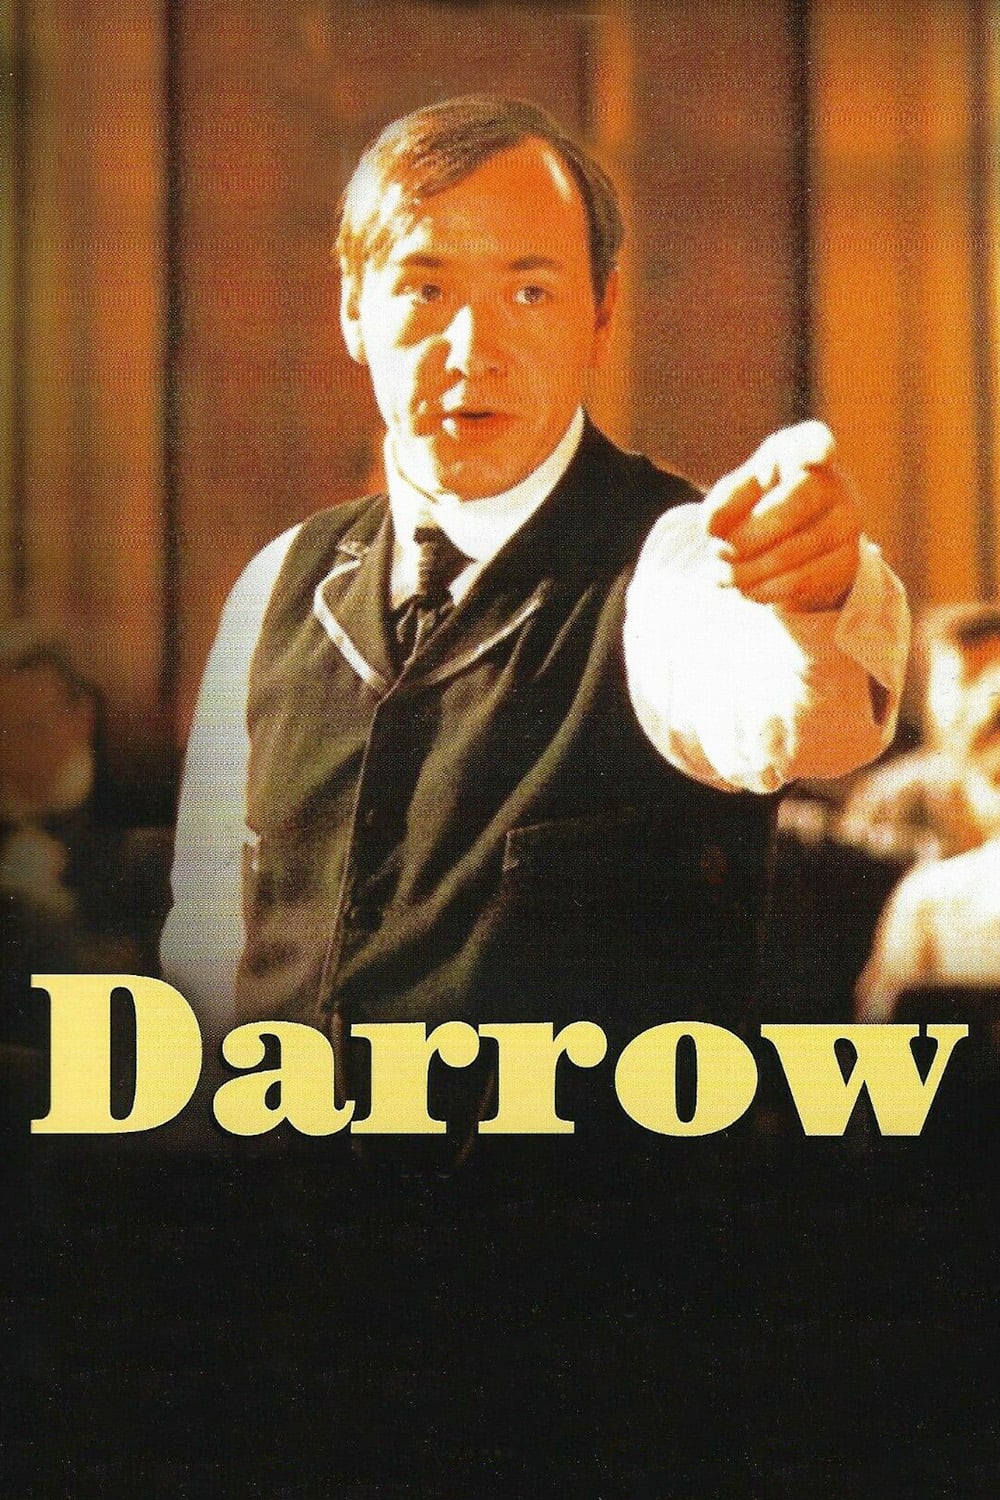 Plakat von "Darrow"